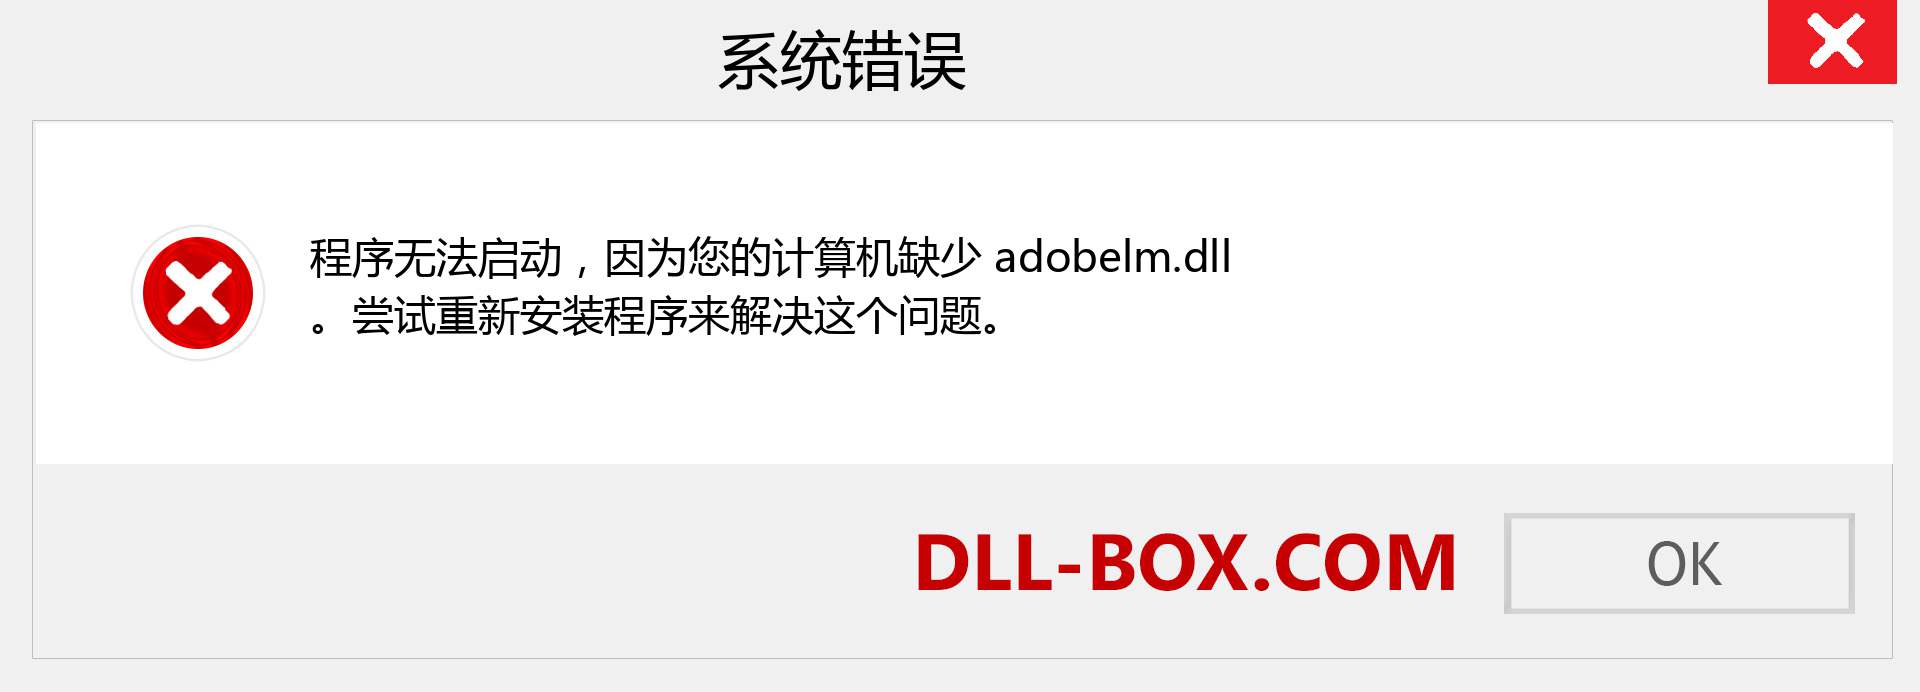 adobelm.dll 文件丢失？。 适用于 Windows 7、8、10 的下载 - 修复 Windows、照片、图像上的 adobelm dll 丢失错误